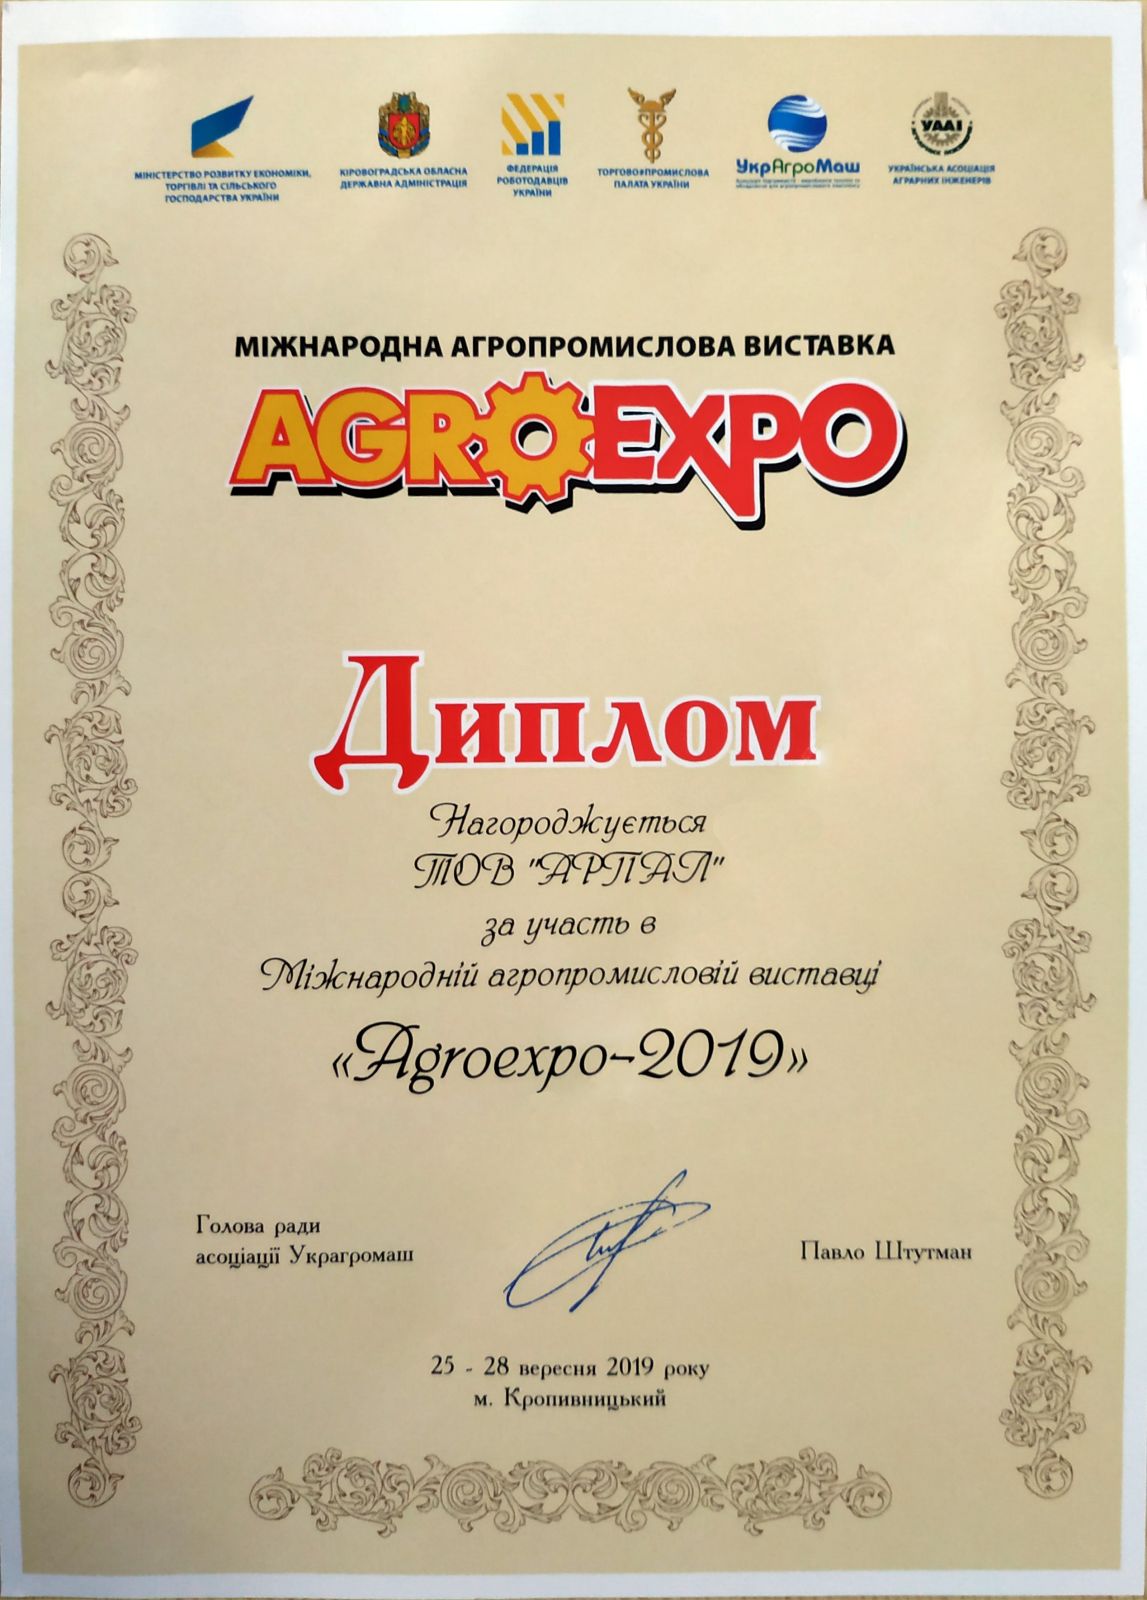 Arpal se je prvič udeležil razstave AGROEXPO v Kropyvnytskyi